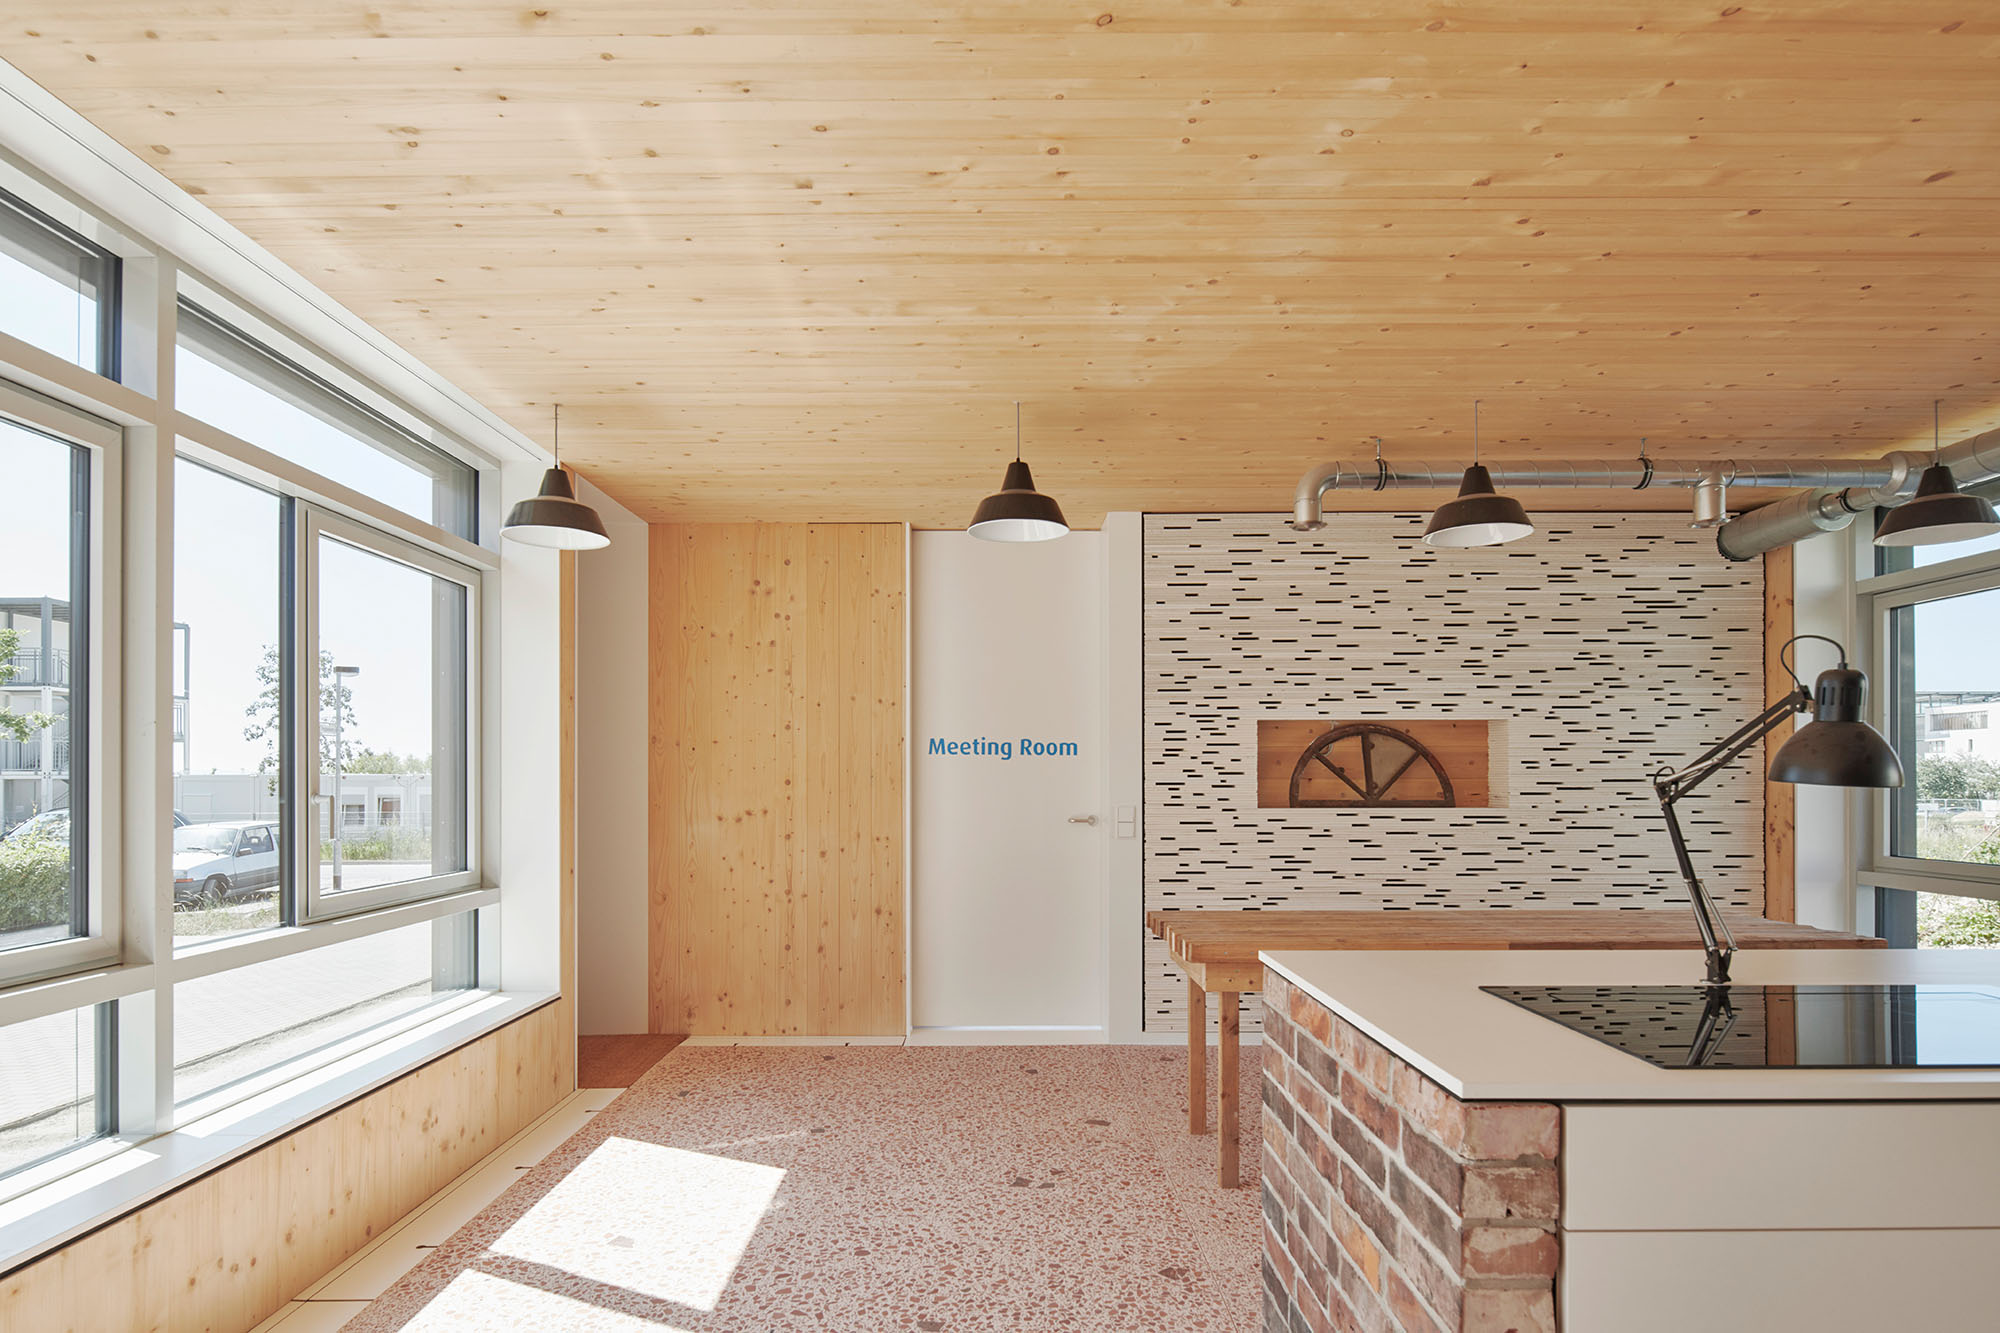 Foto, Innenraum mit Fenstern auf der linken Seite, Kücheninsel und große, Tisch links. Es sind verschiedene Materialen wie Backstein, Holz und Mosaik verbaut. 